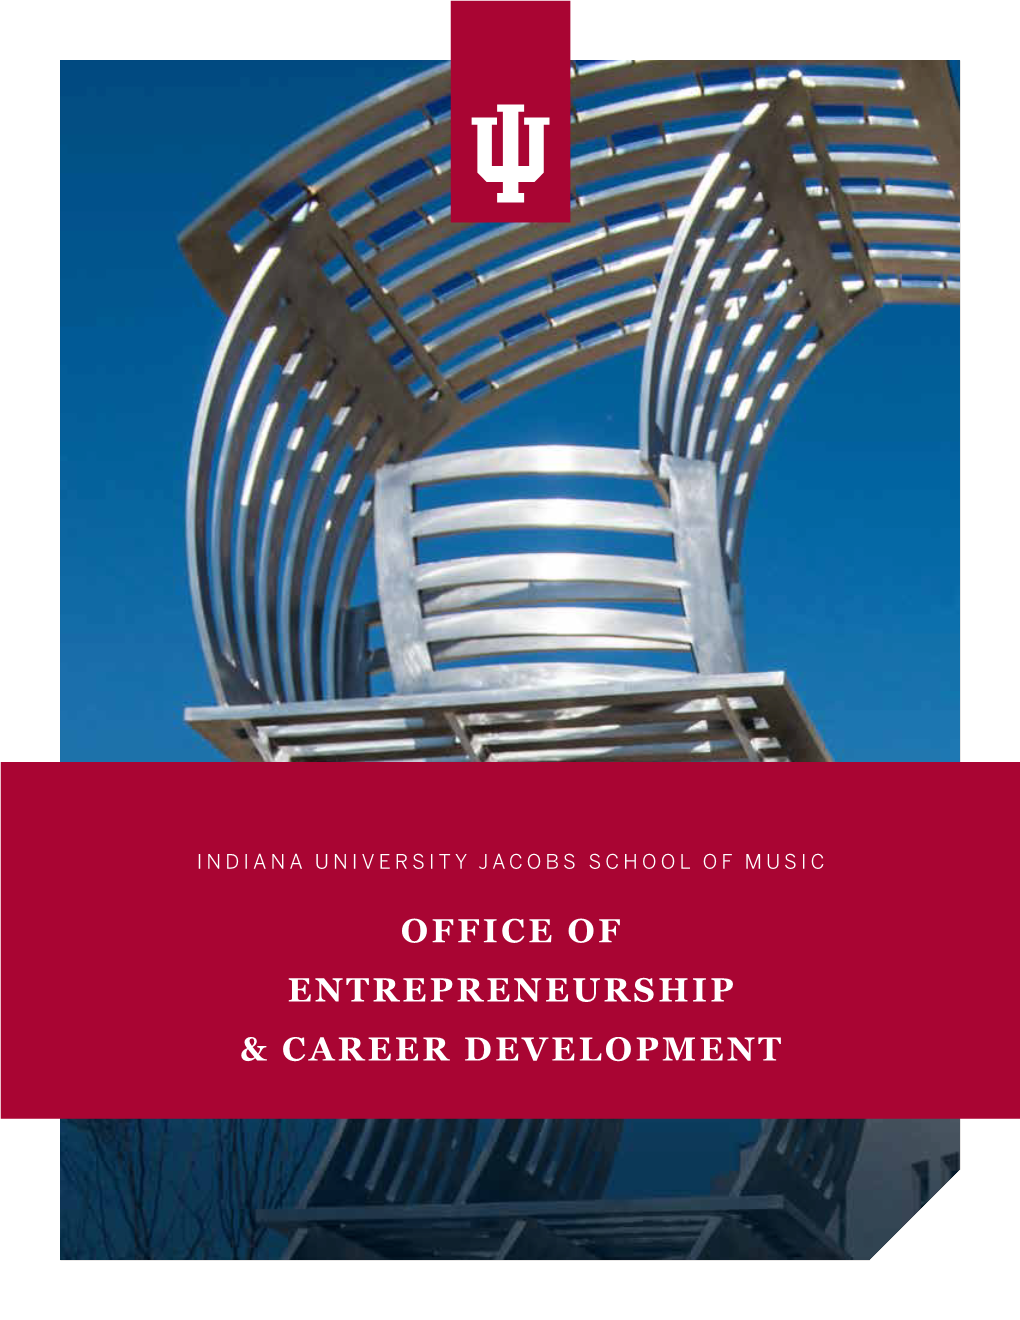 Office of Entrepreneurship & Career Development